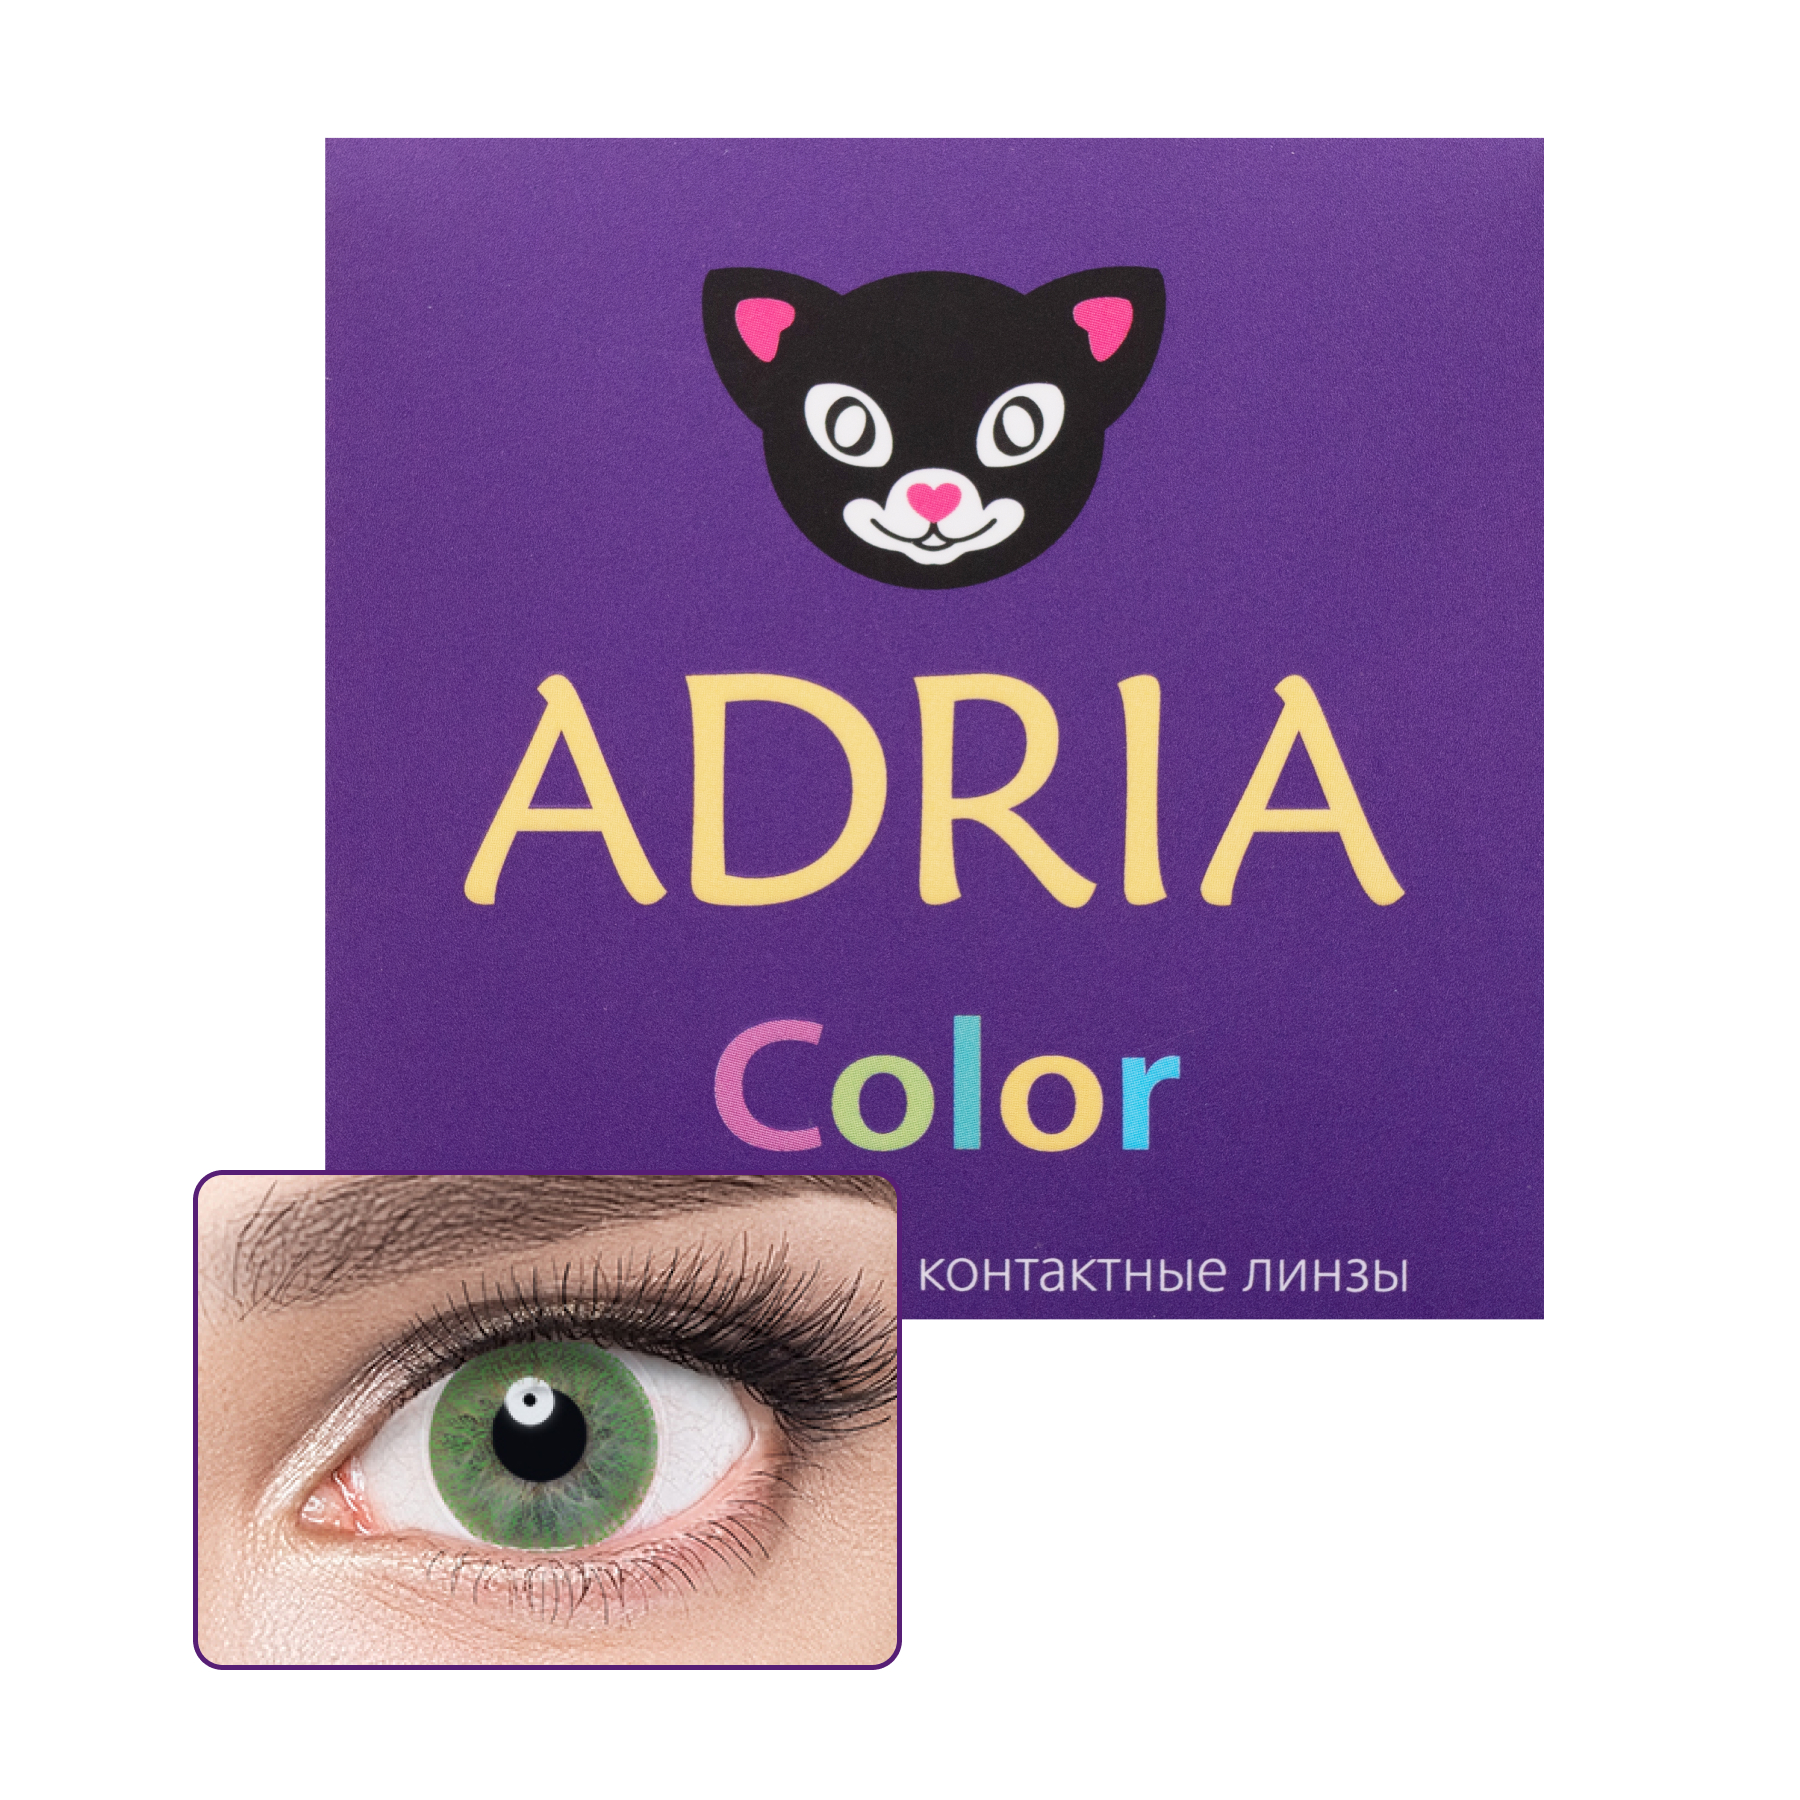 Купить COLOR 1 TONE 2 линзы, Контактные линзы Adria Color 1 Tone 8, 6 -0, 50 GREEN 2 шт.